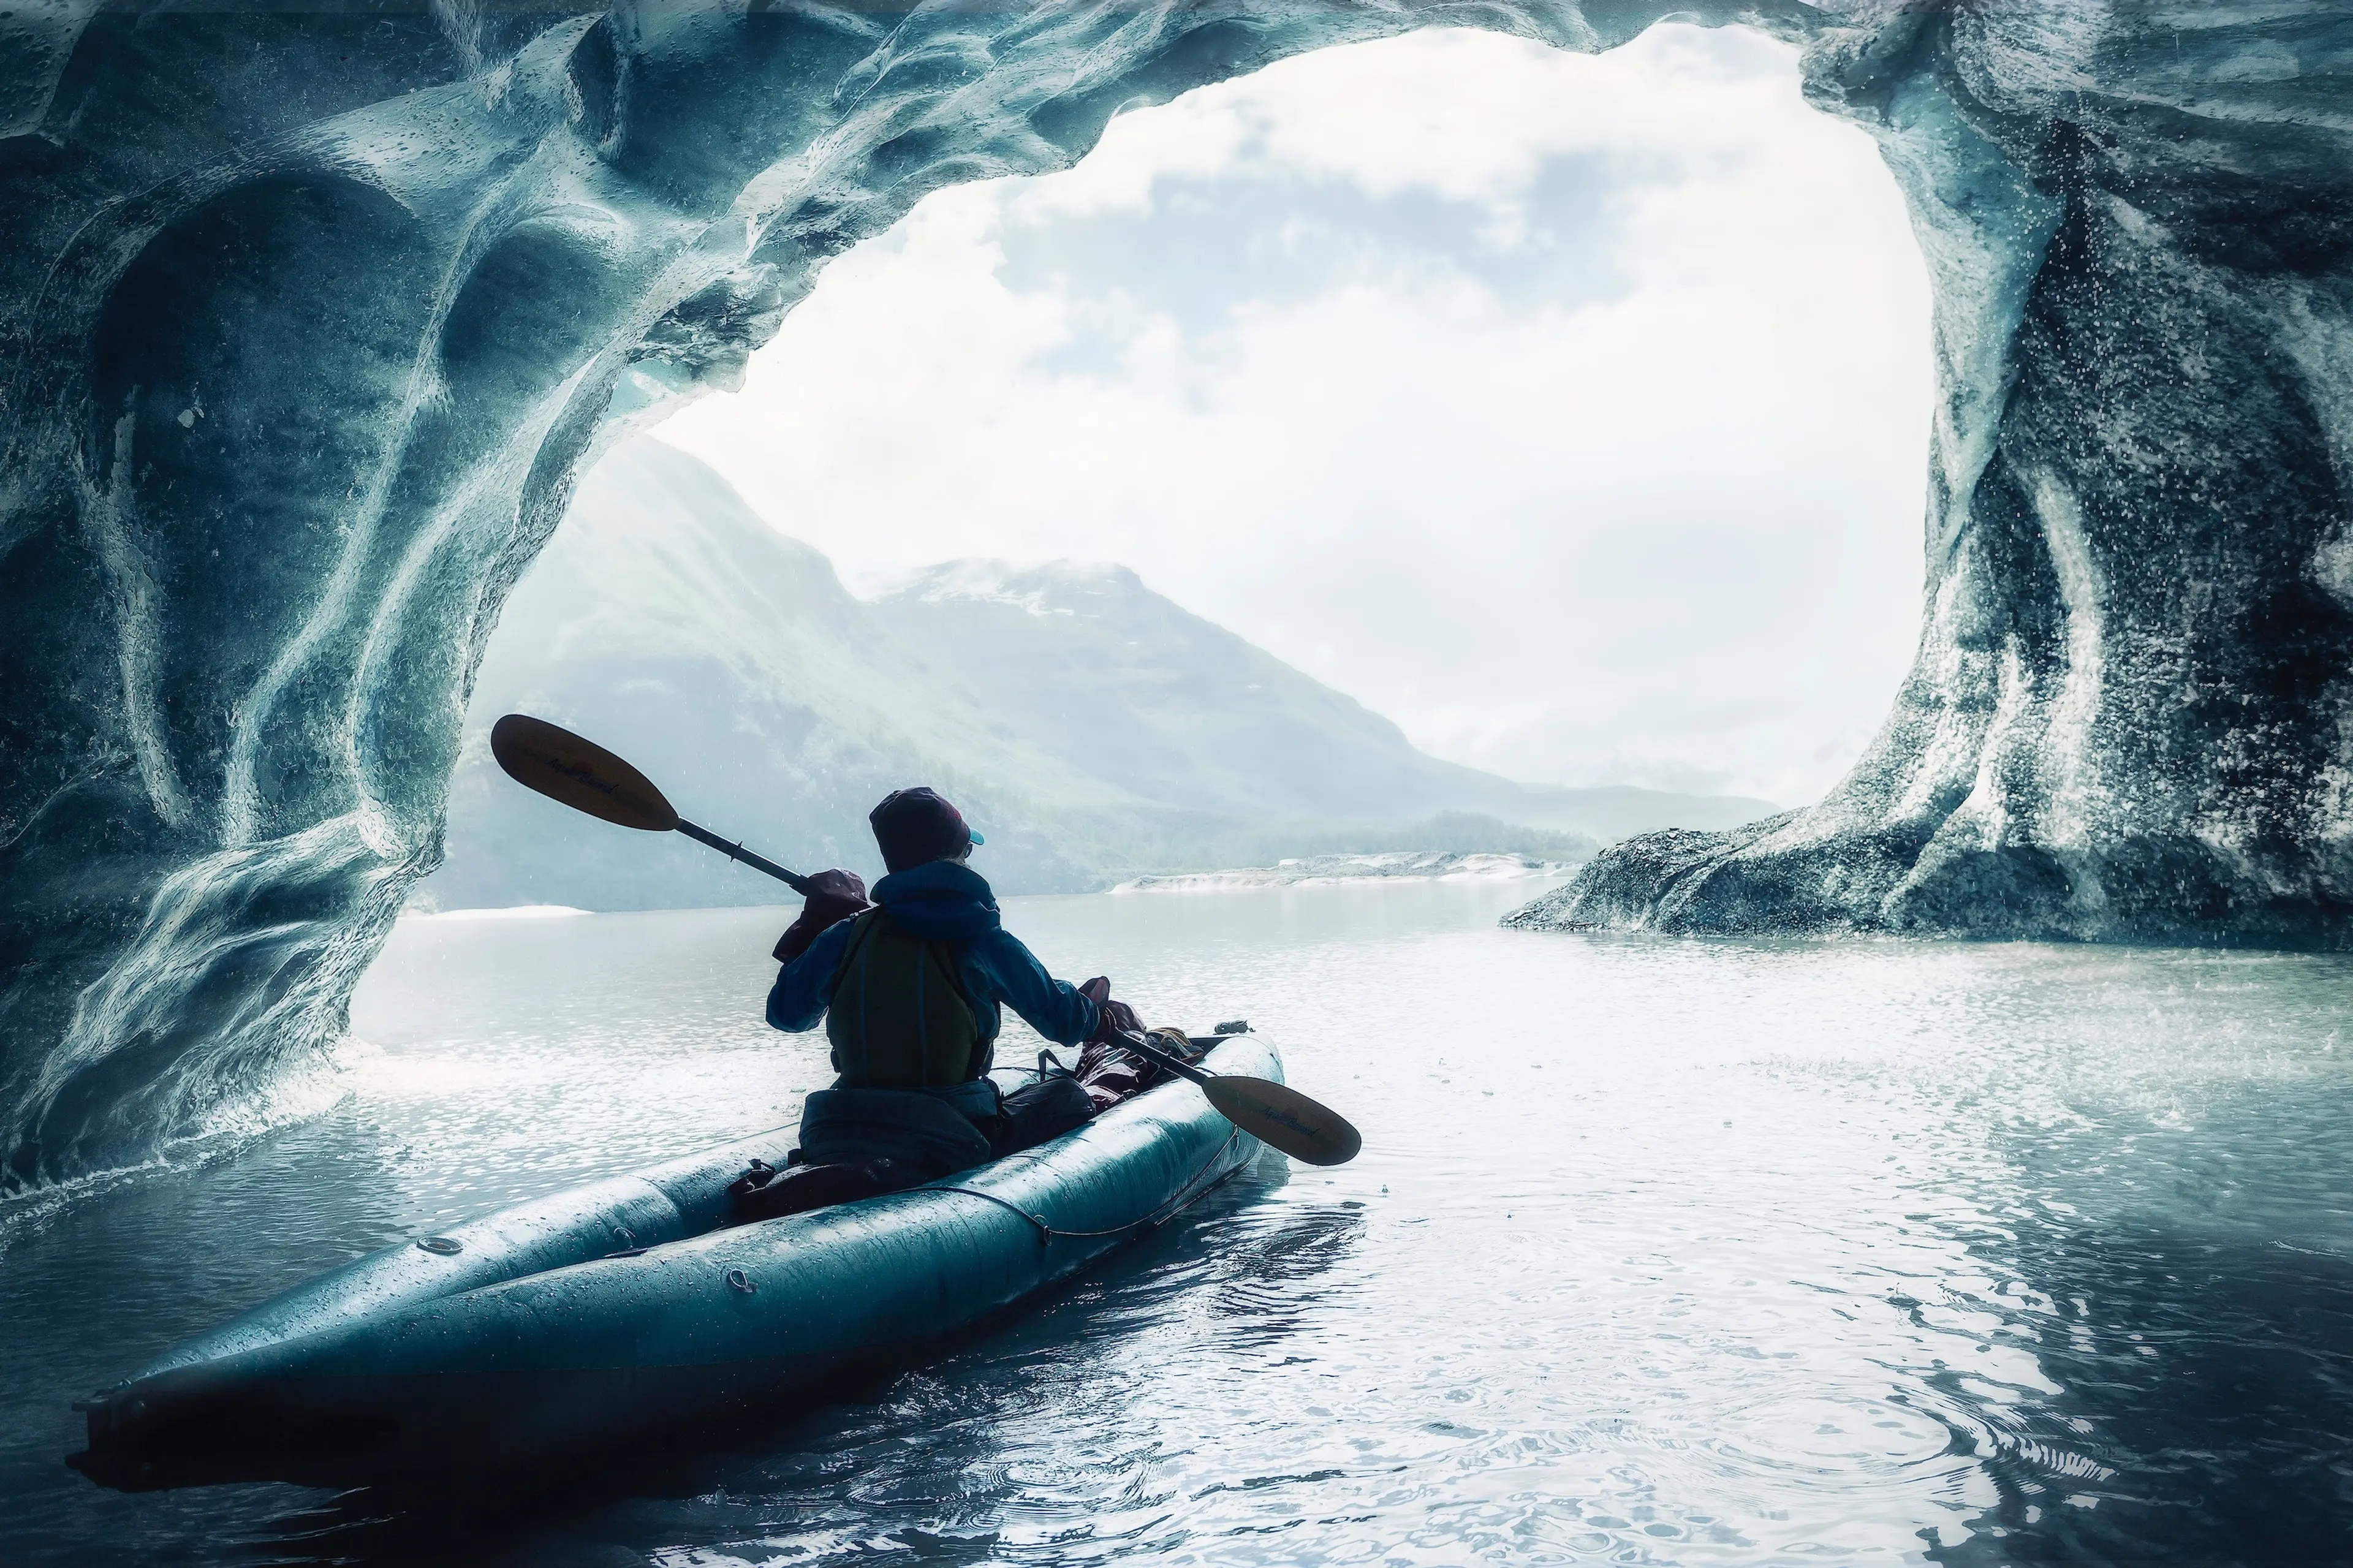 Kayaking among the glaciers